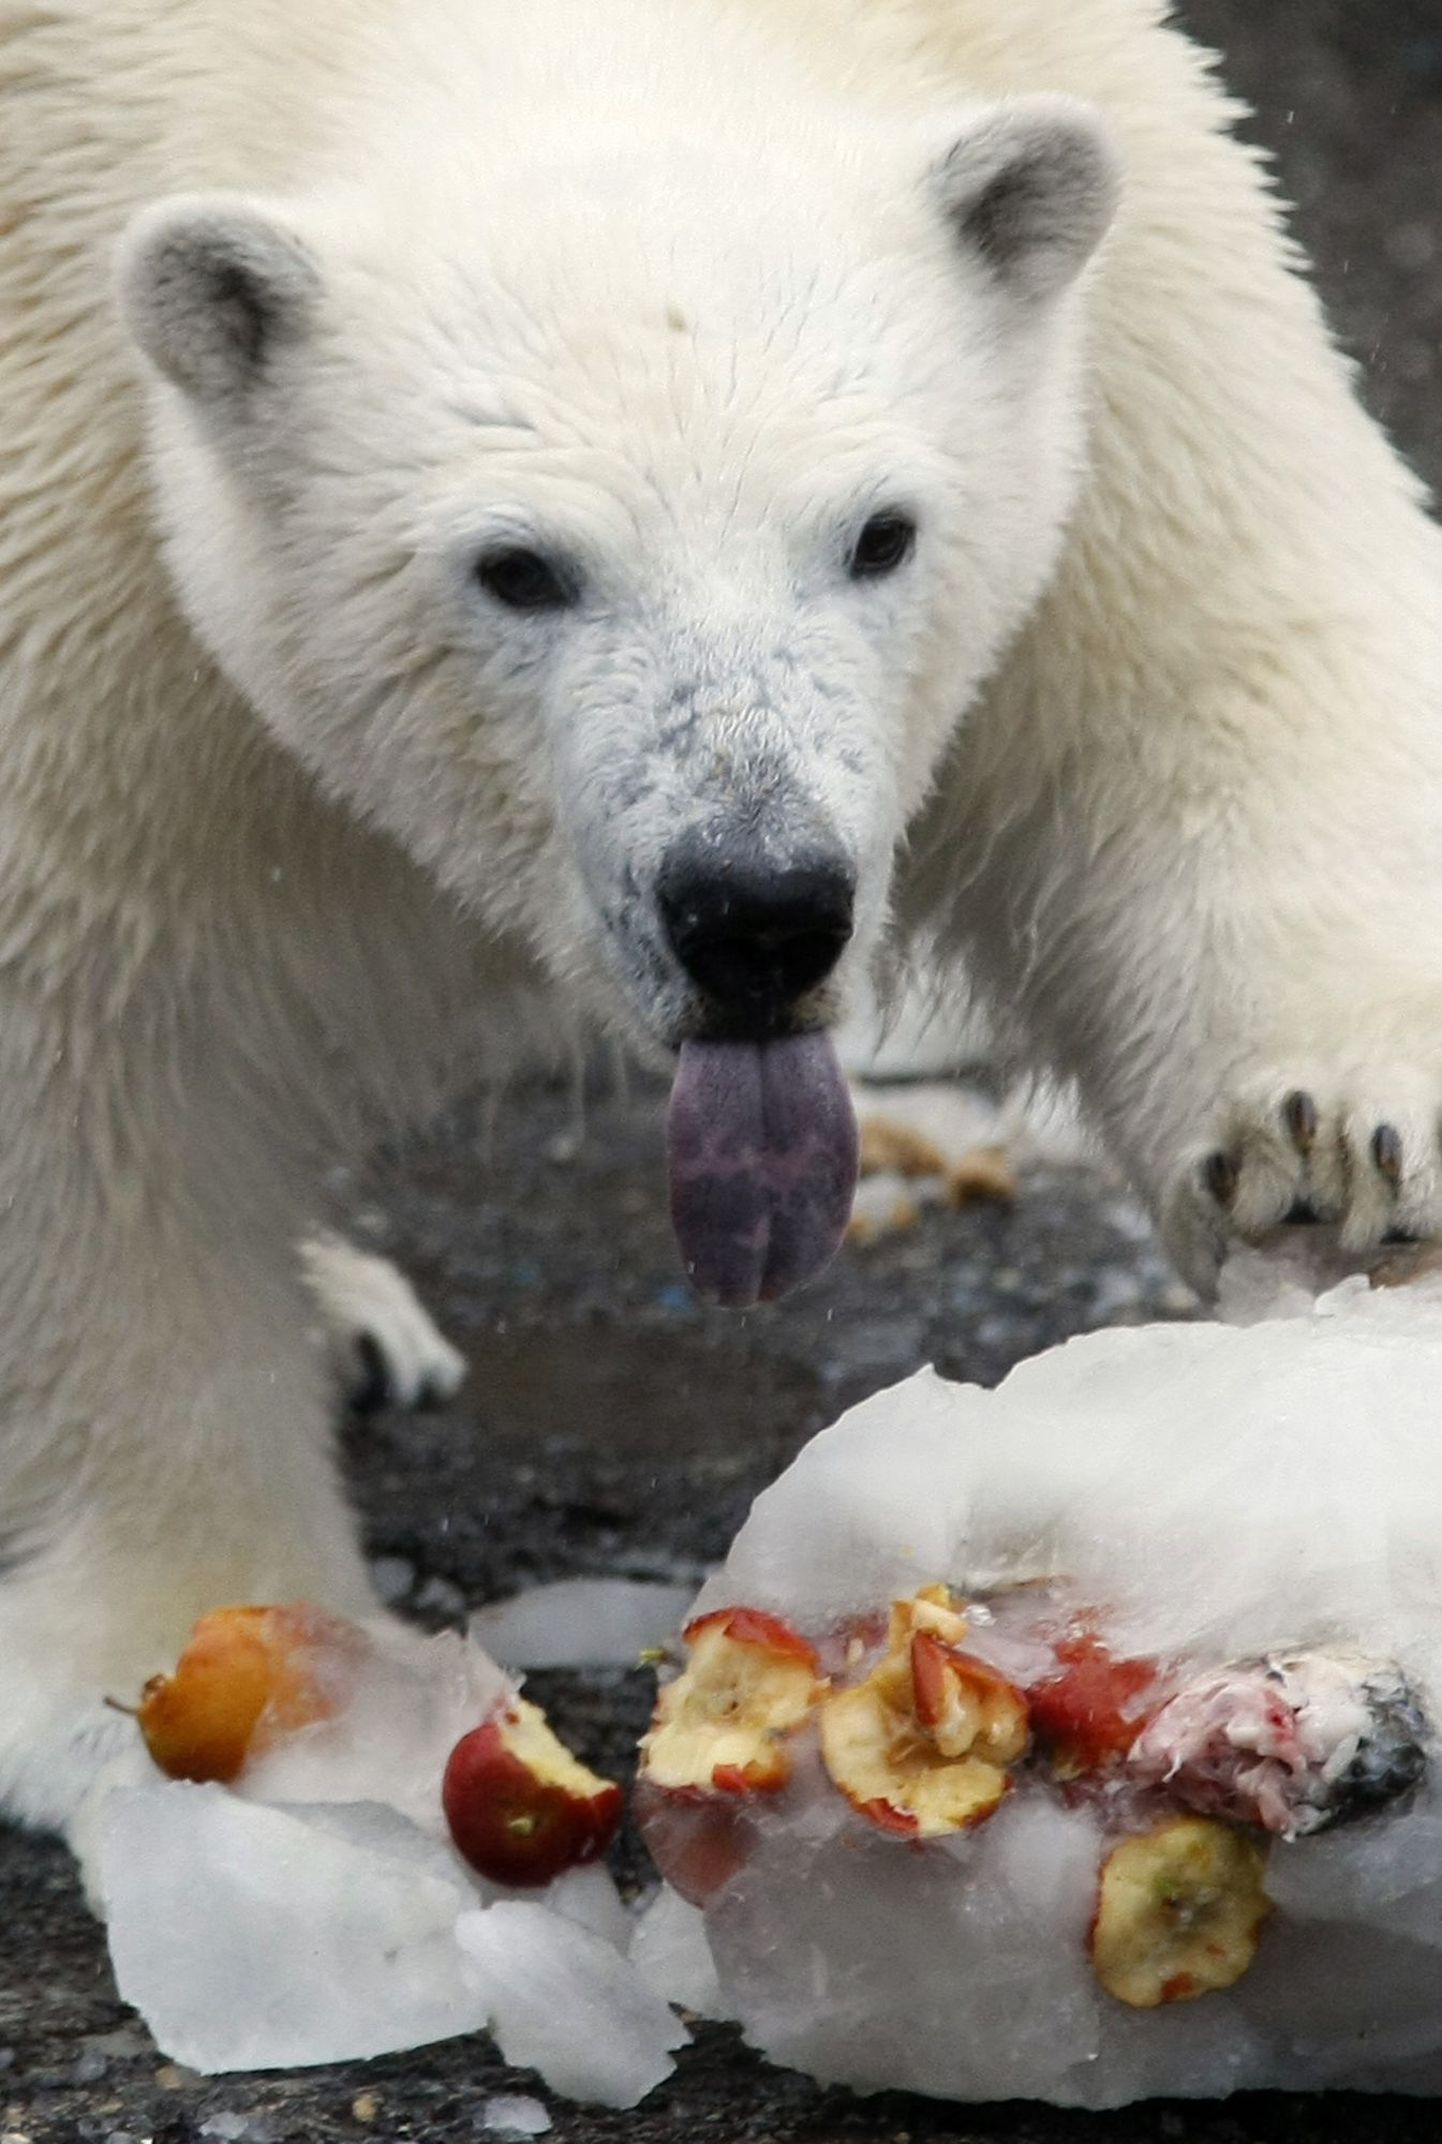 Saksamaa loomaaia jääkaru suri pärast koti ja jope söömist